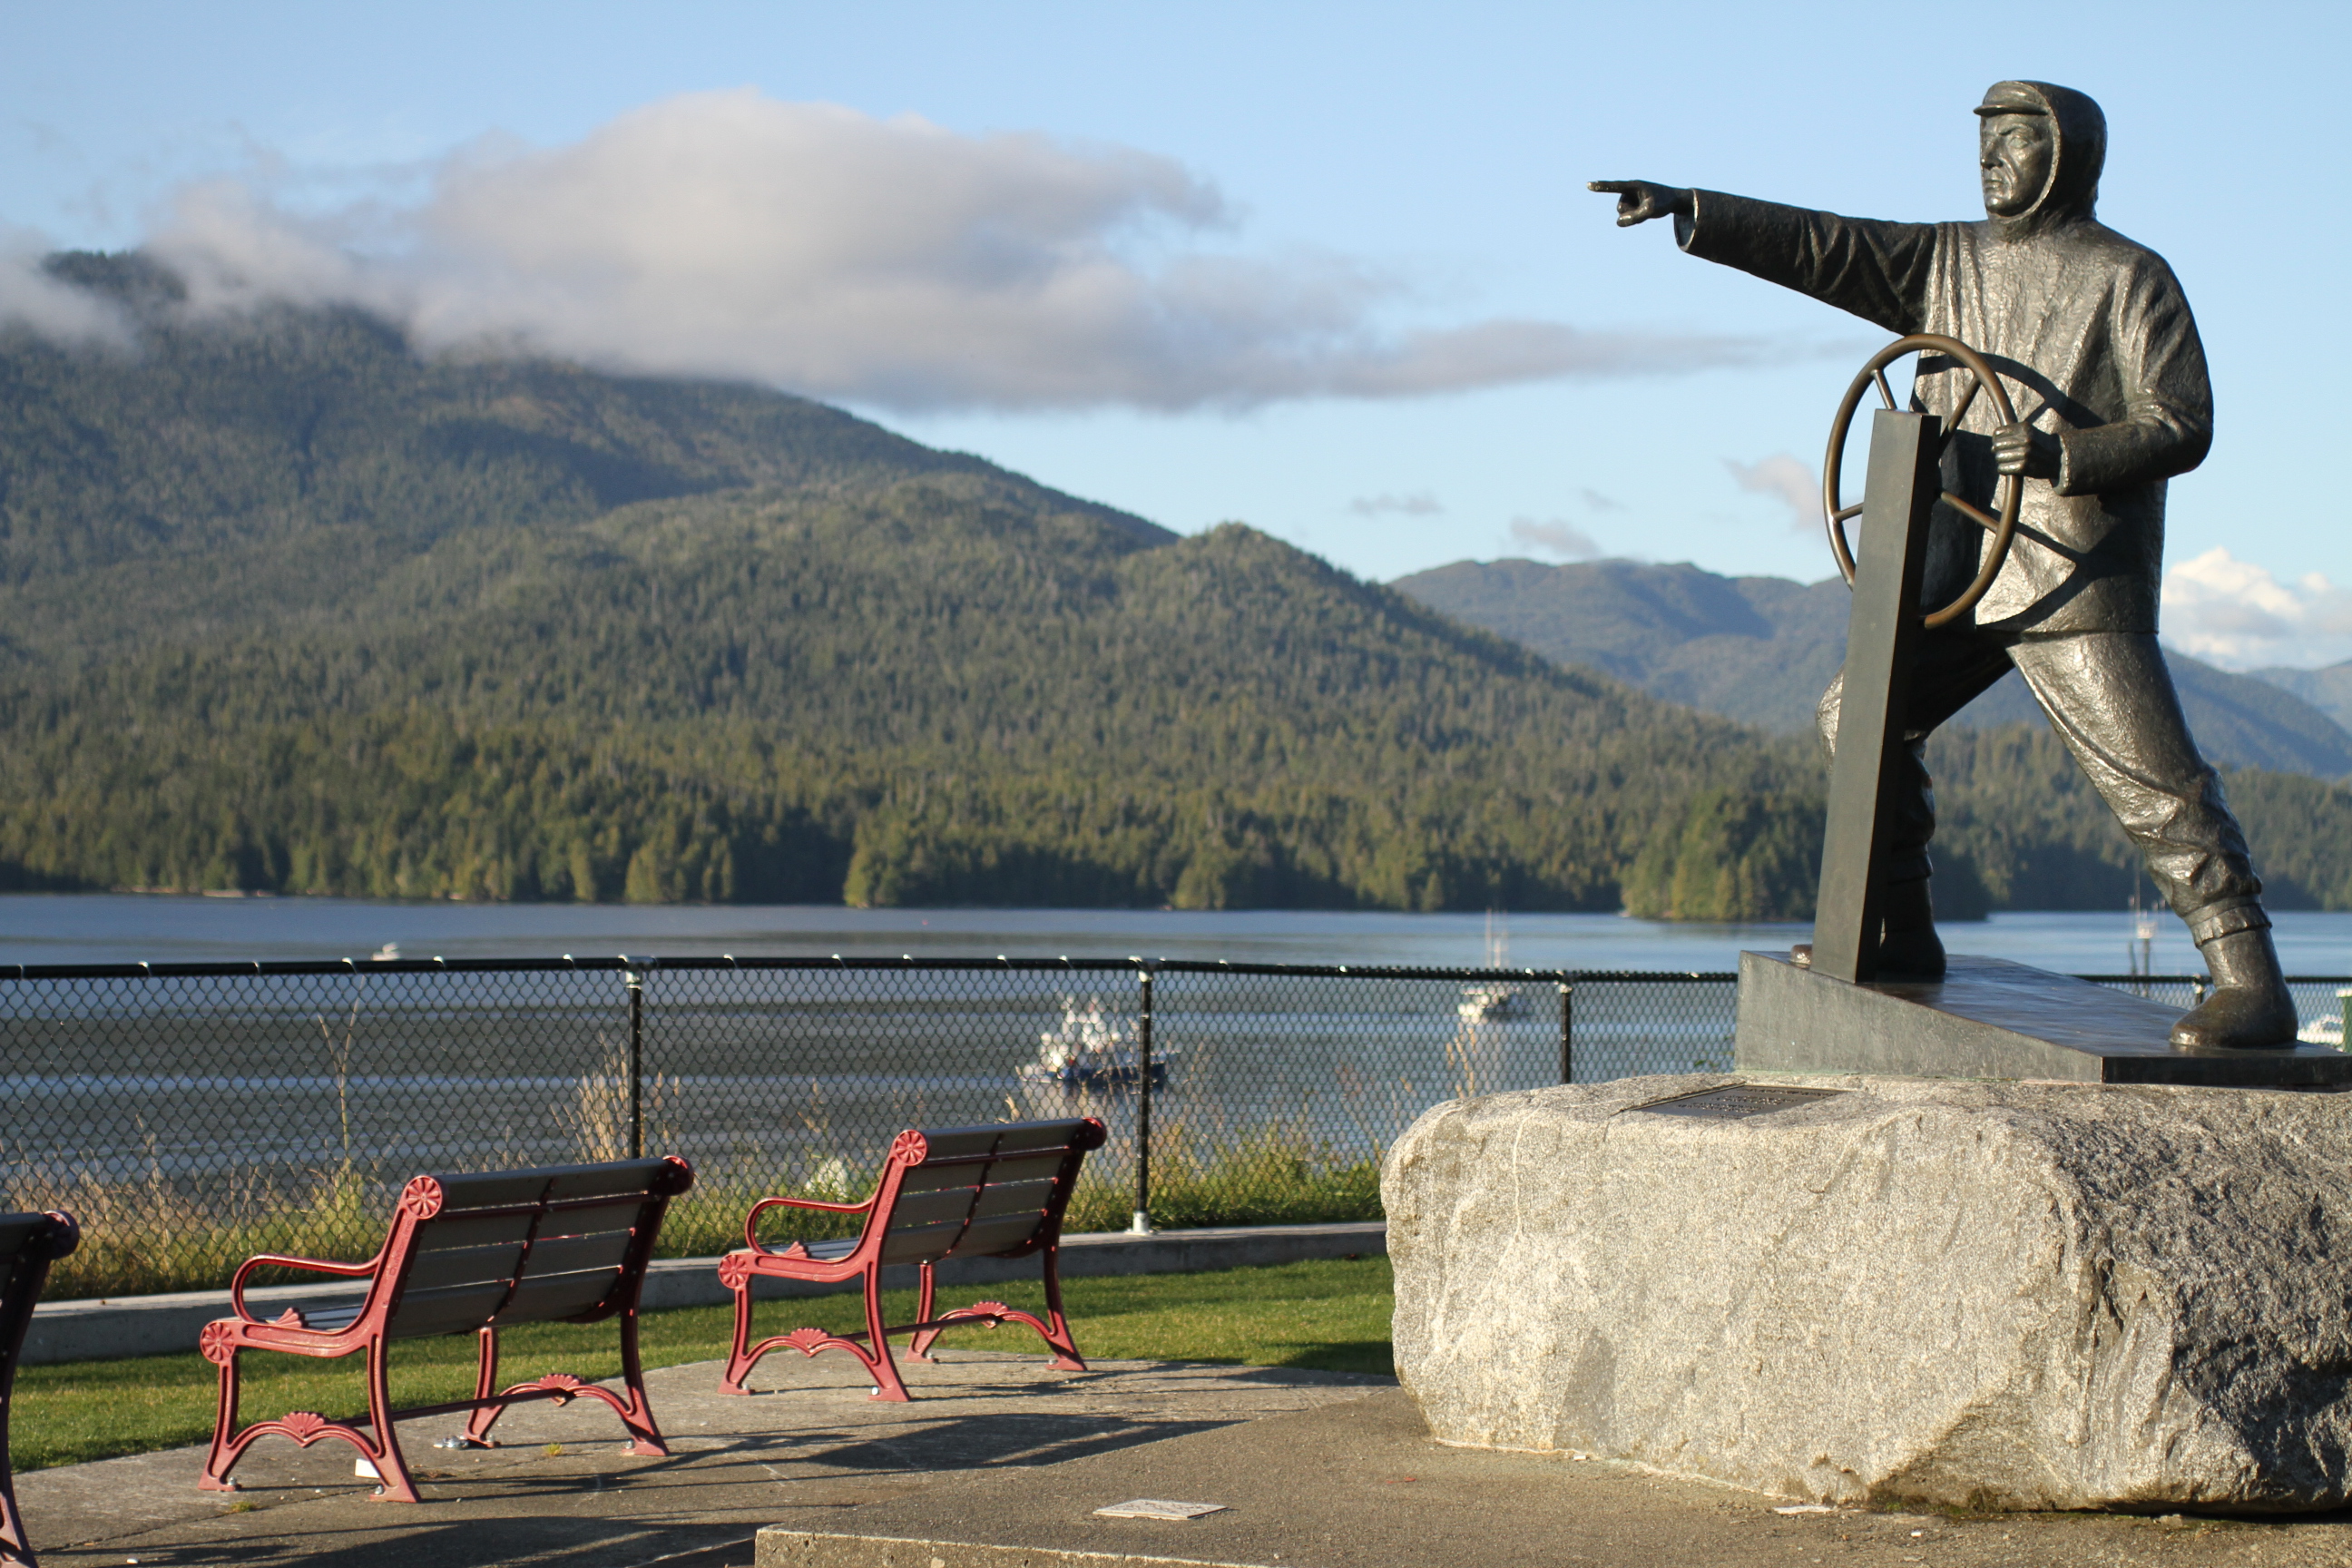 Prince Rupert, British Columbia